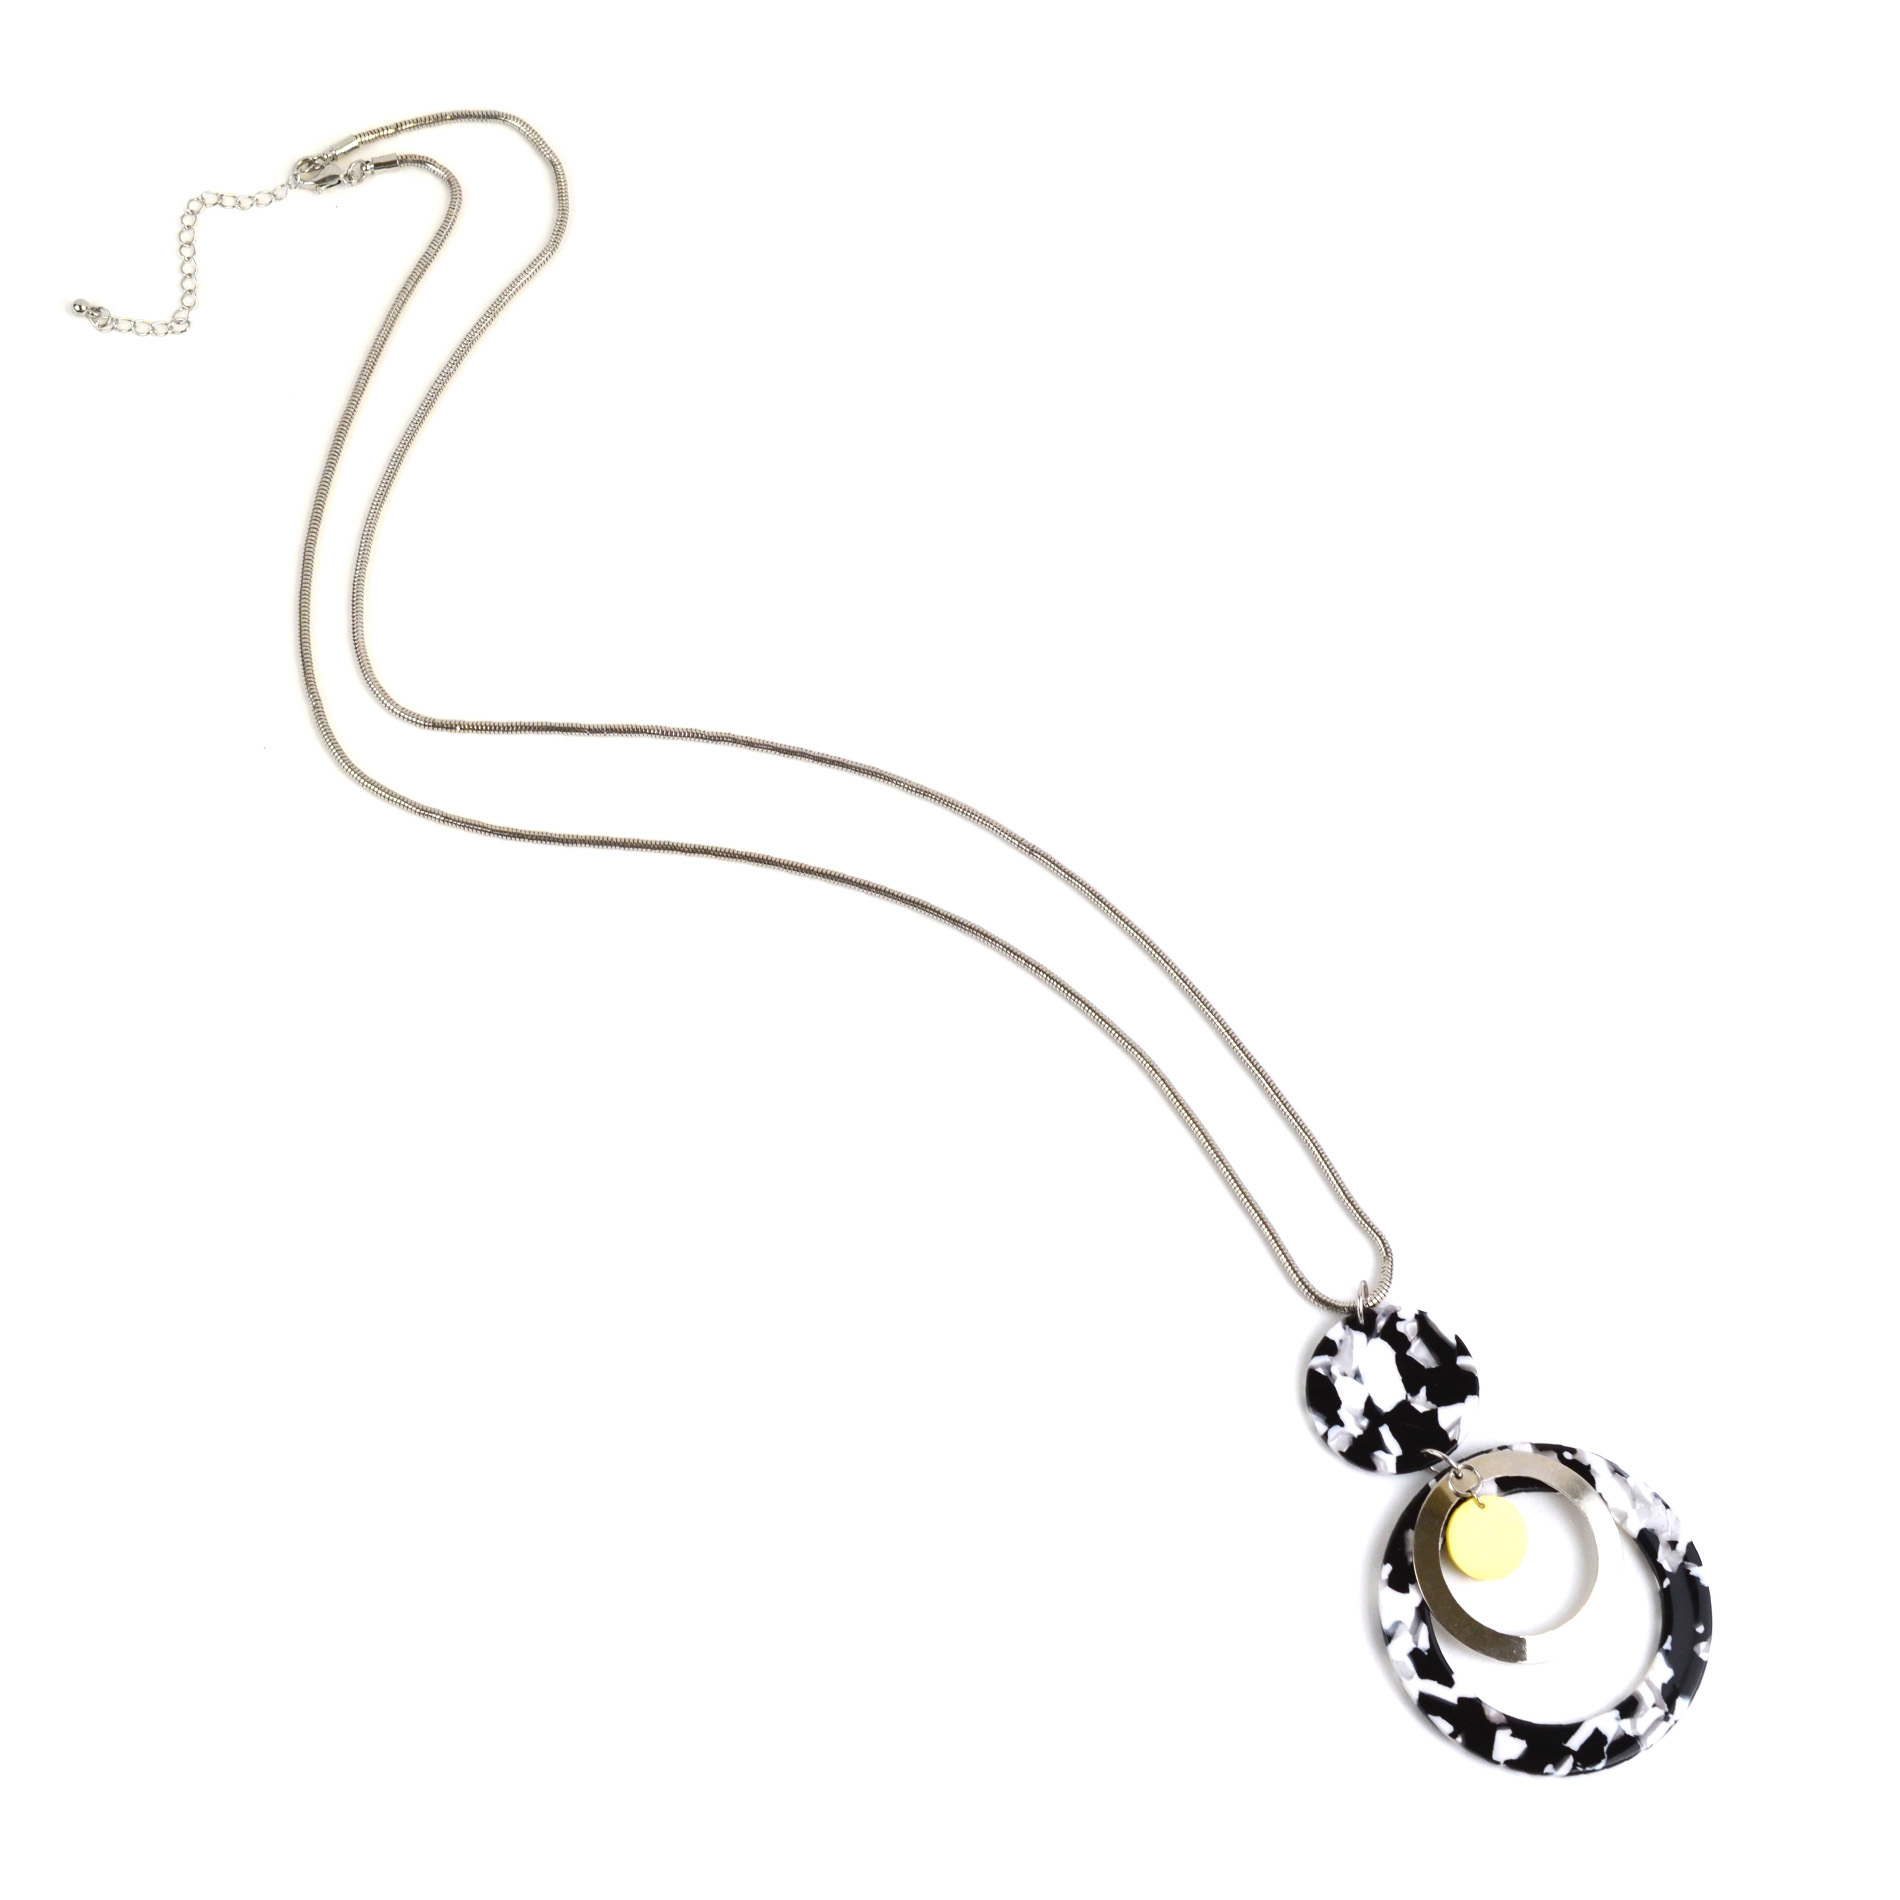 Covington Black & White Pendant Necklace